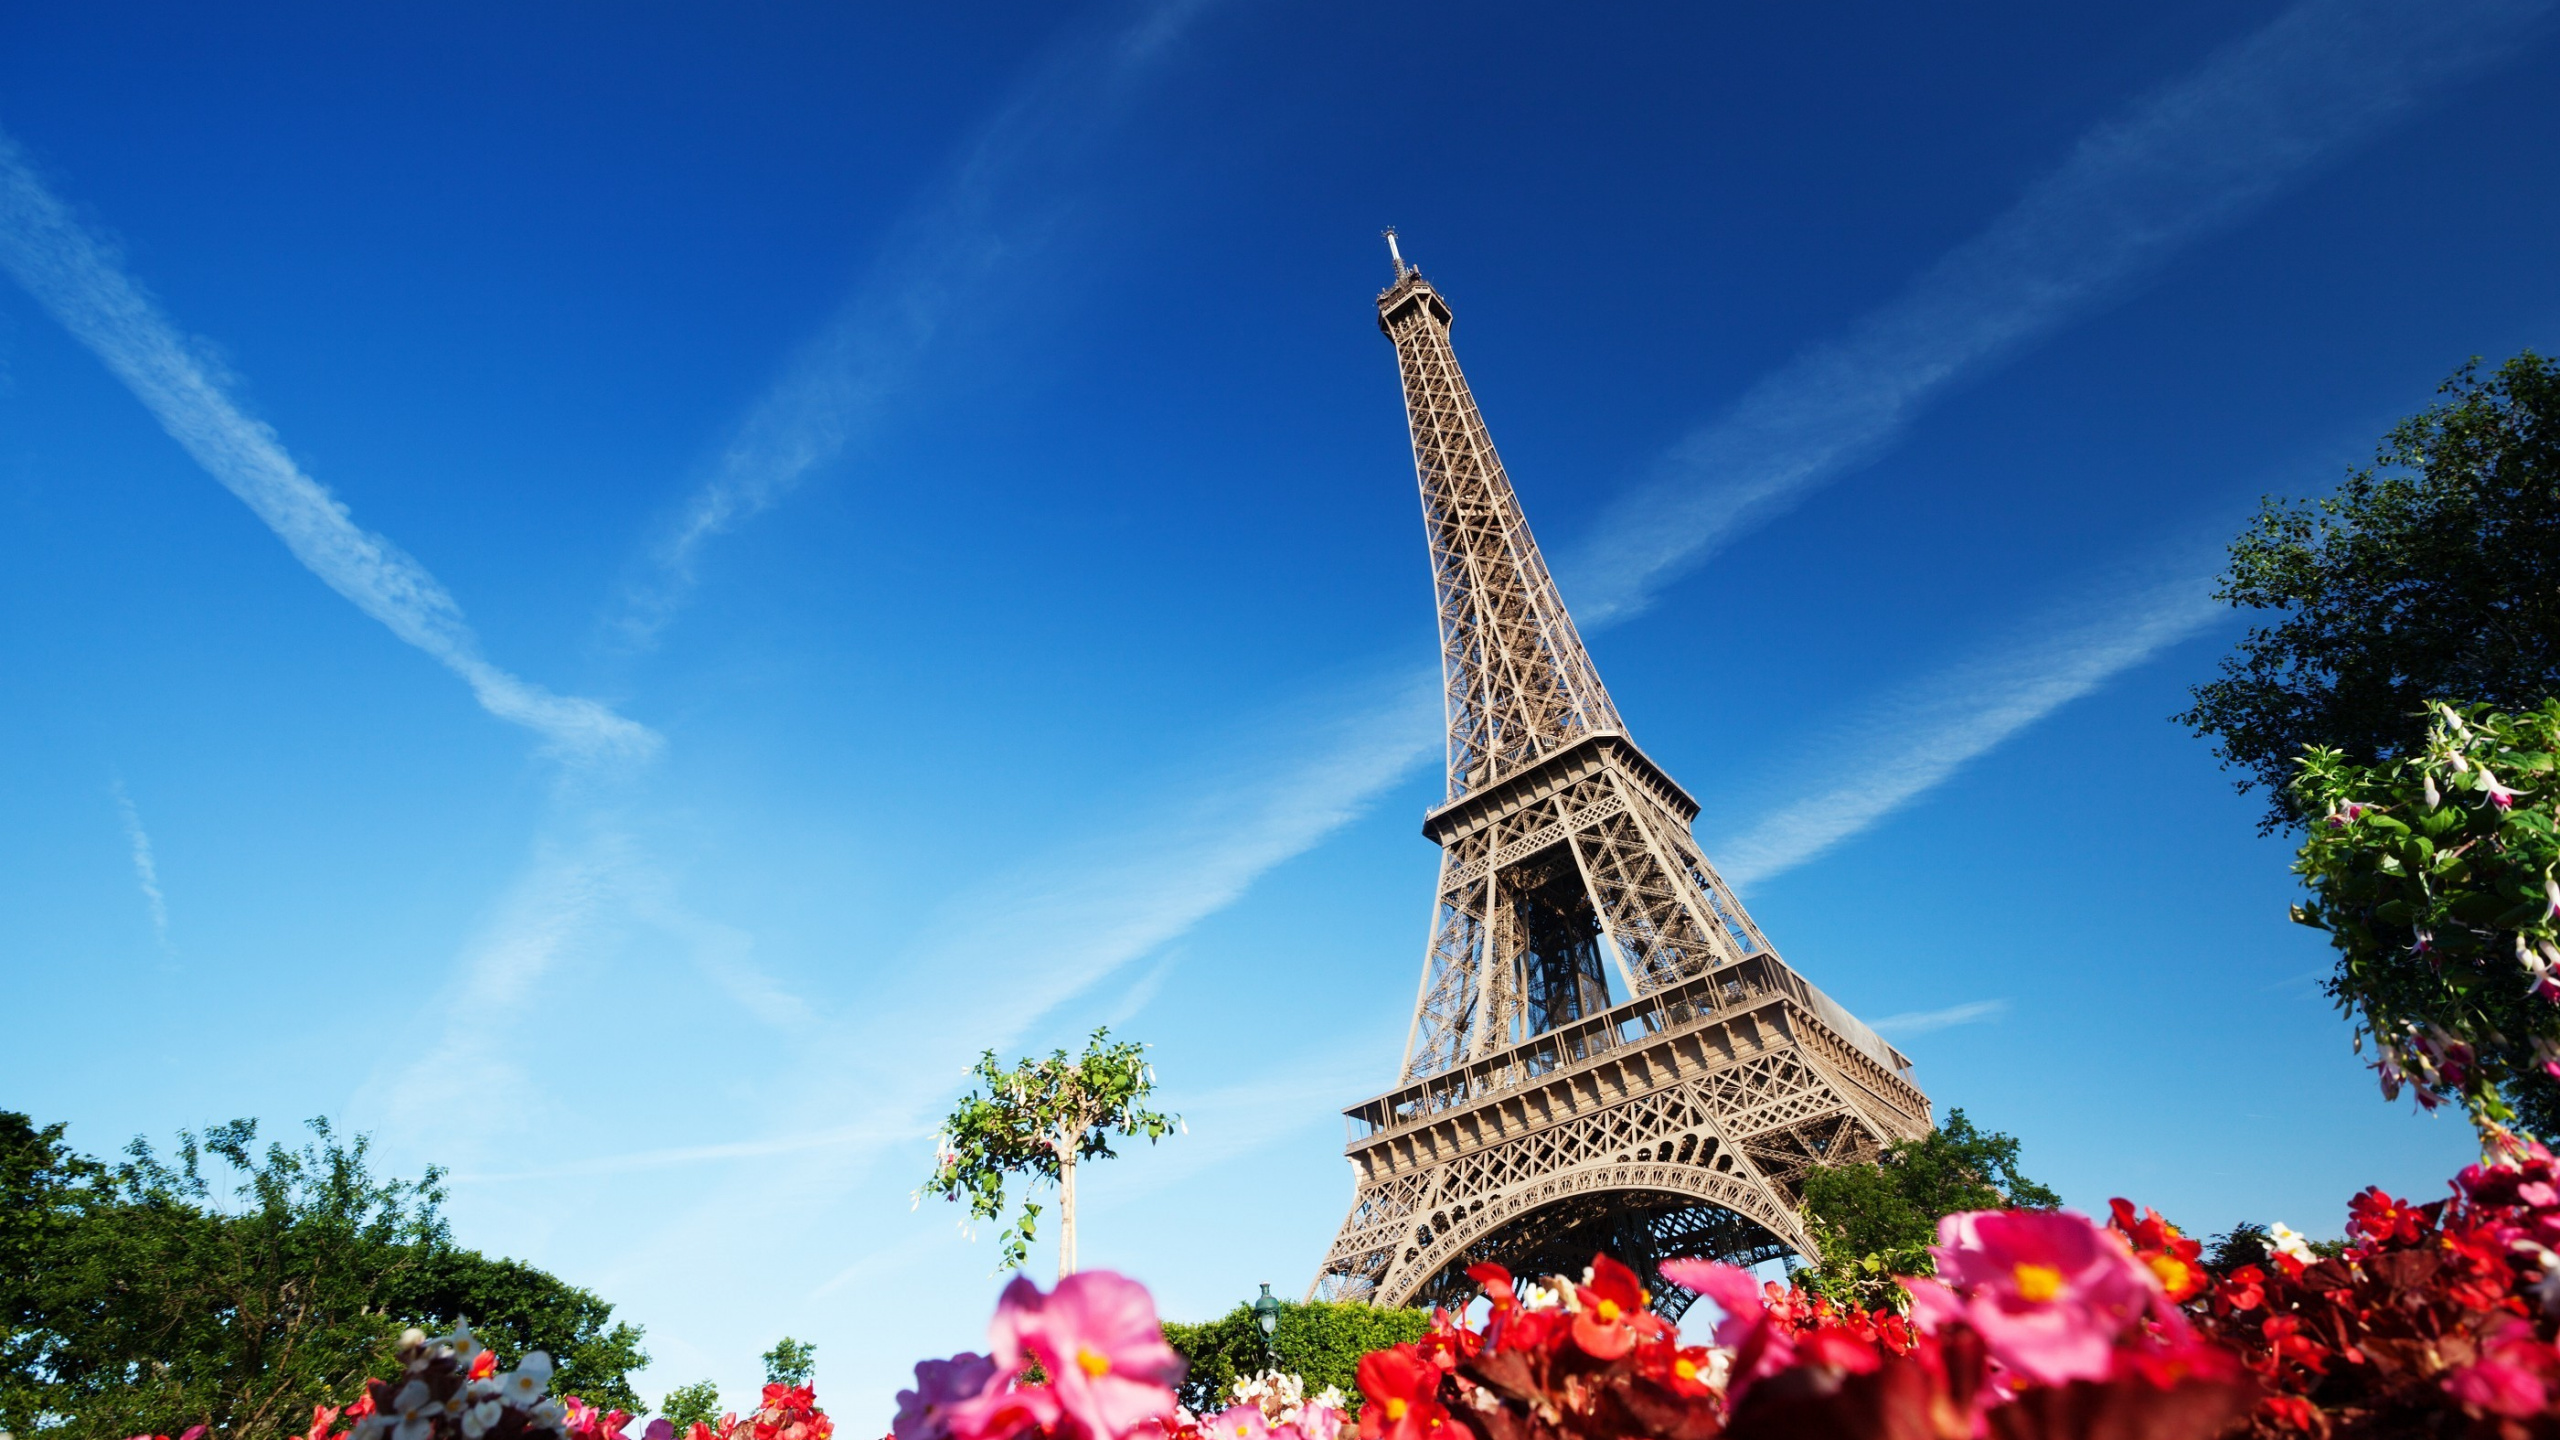 艾菲尔铁塔, 里程碑, 巴黎的埃菲尔铁塔, 天空, 旅游业 壁纸 2560x1440 允许